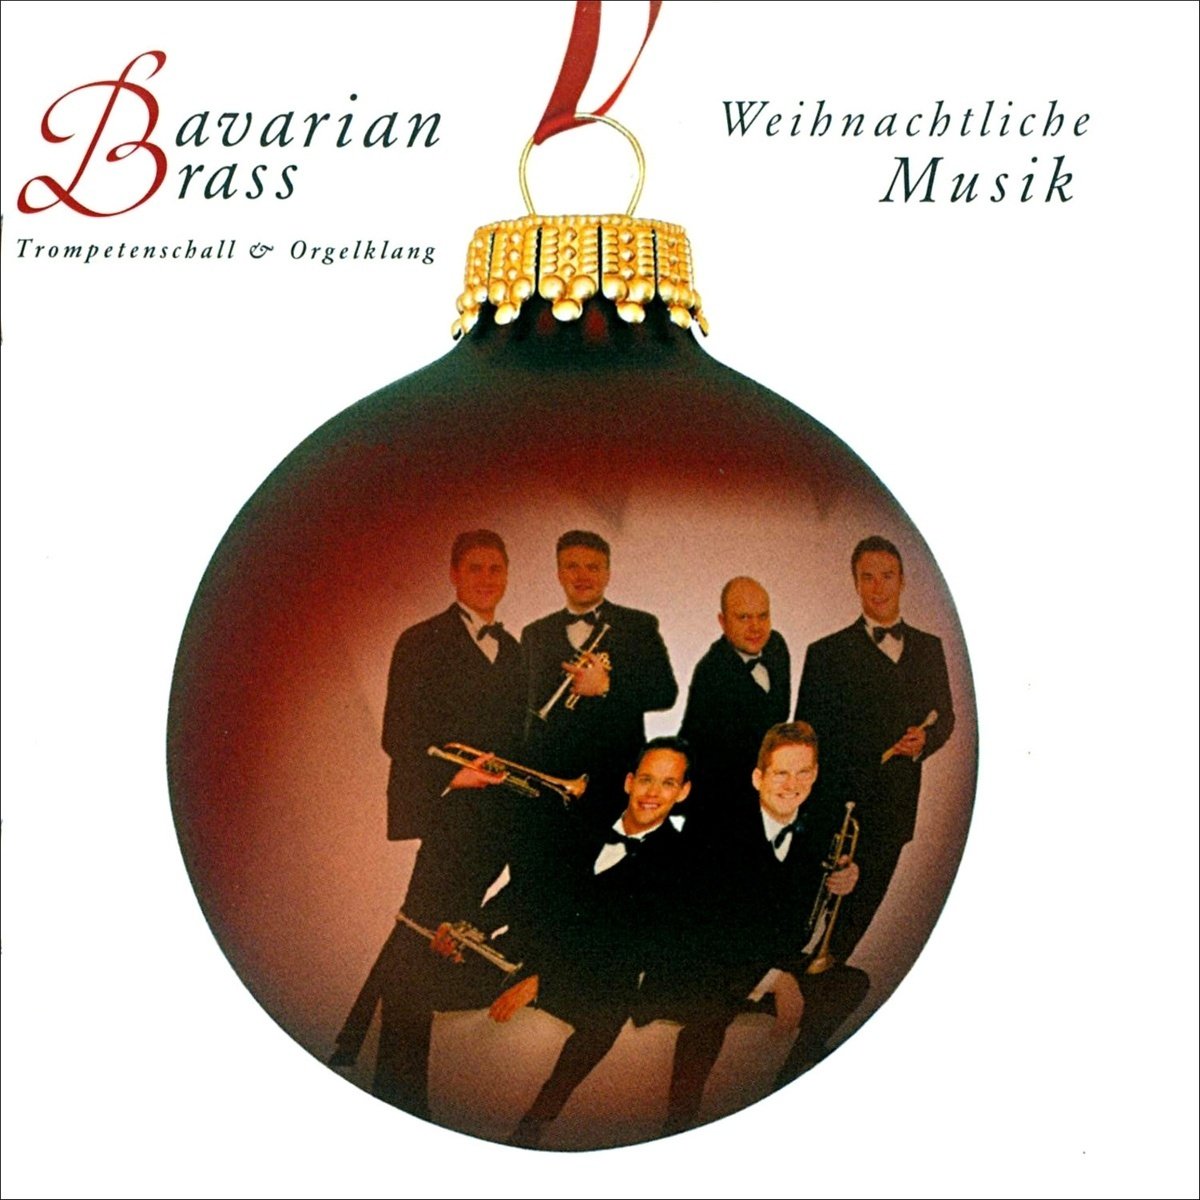 Weihnachtliche Musik - Bavarian Brass. (CD)